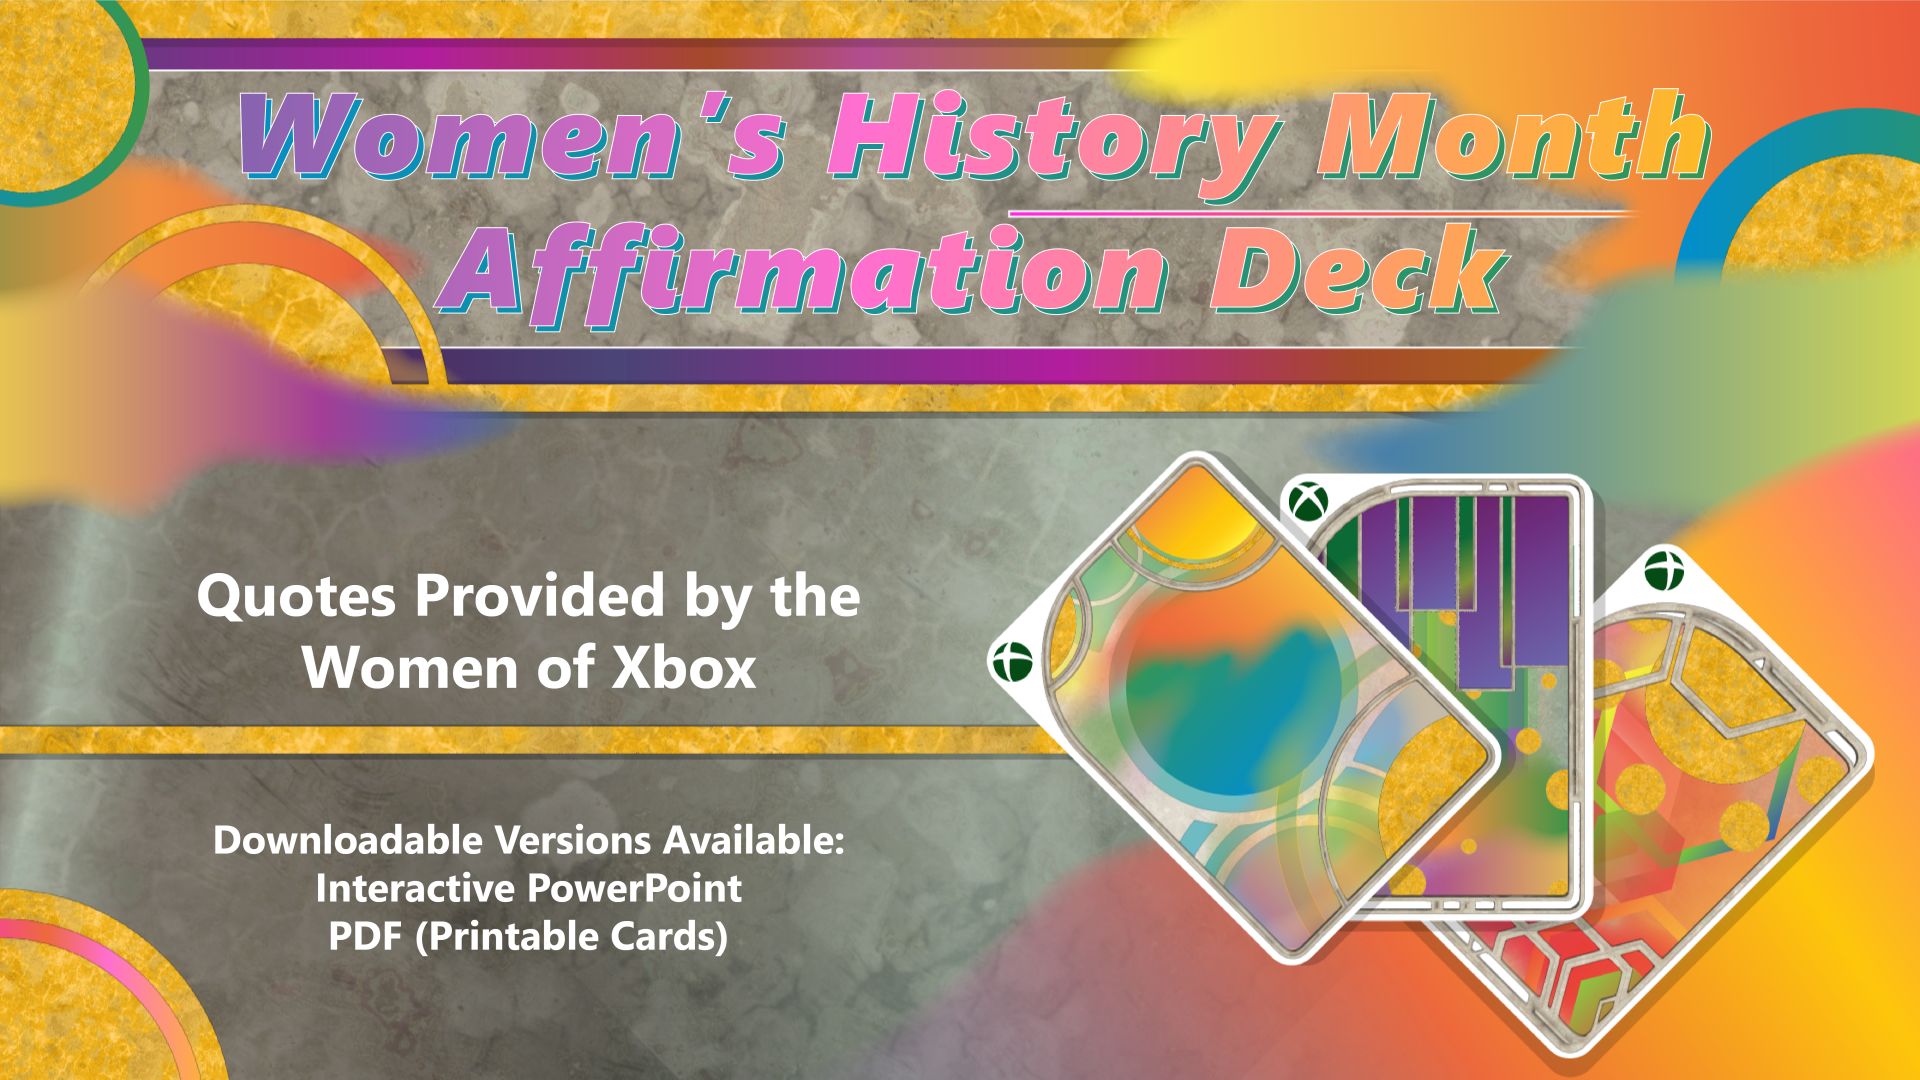 Herunterladbare und druckbare Versionen des Affirmations-Decks zum Monat der Frauengeschichte verfügbar.